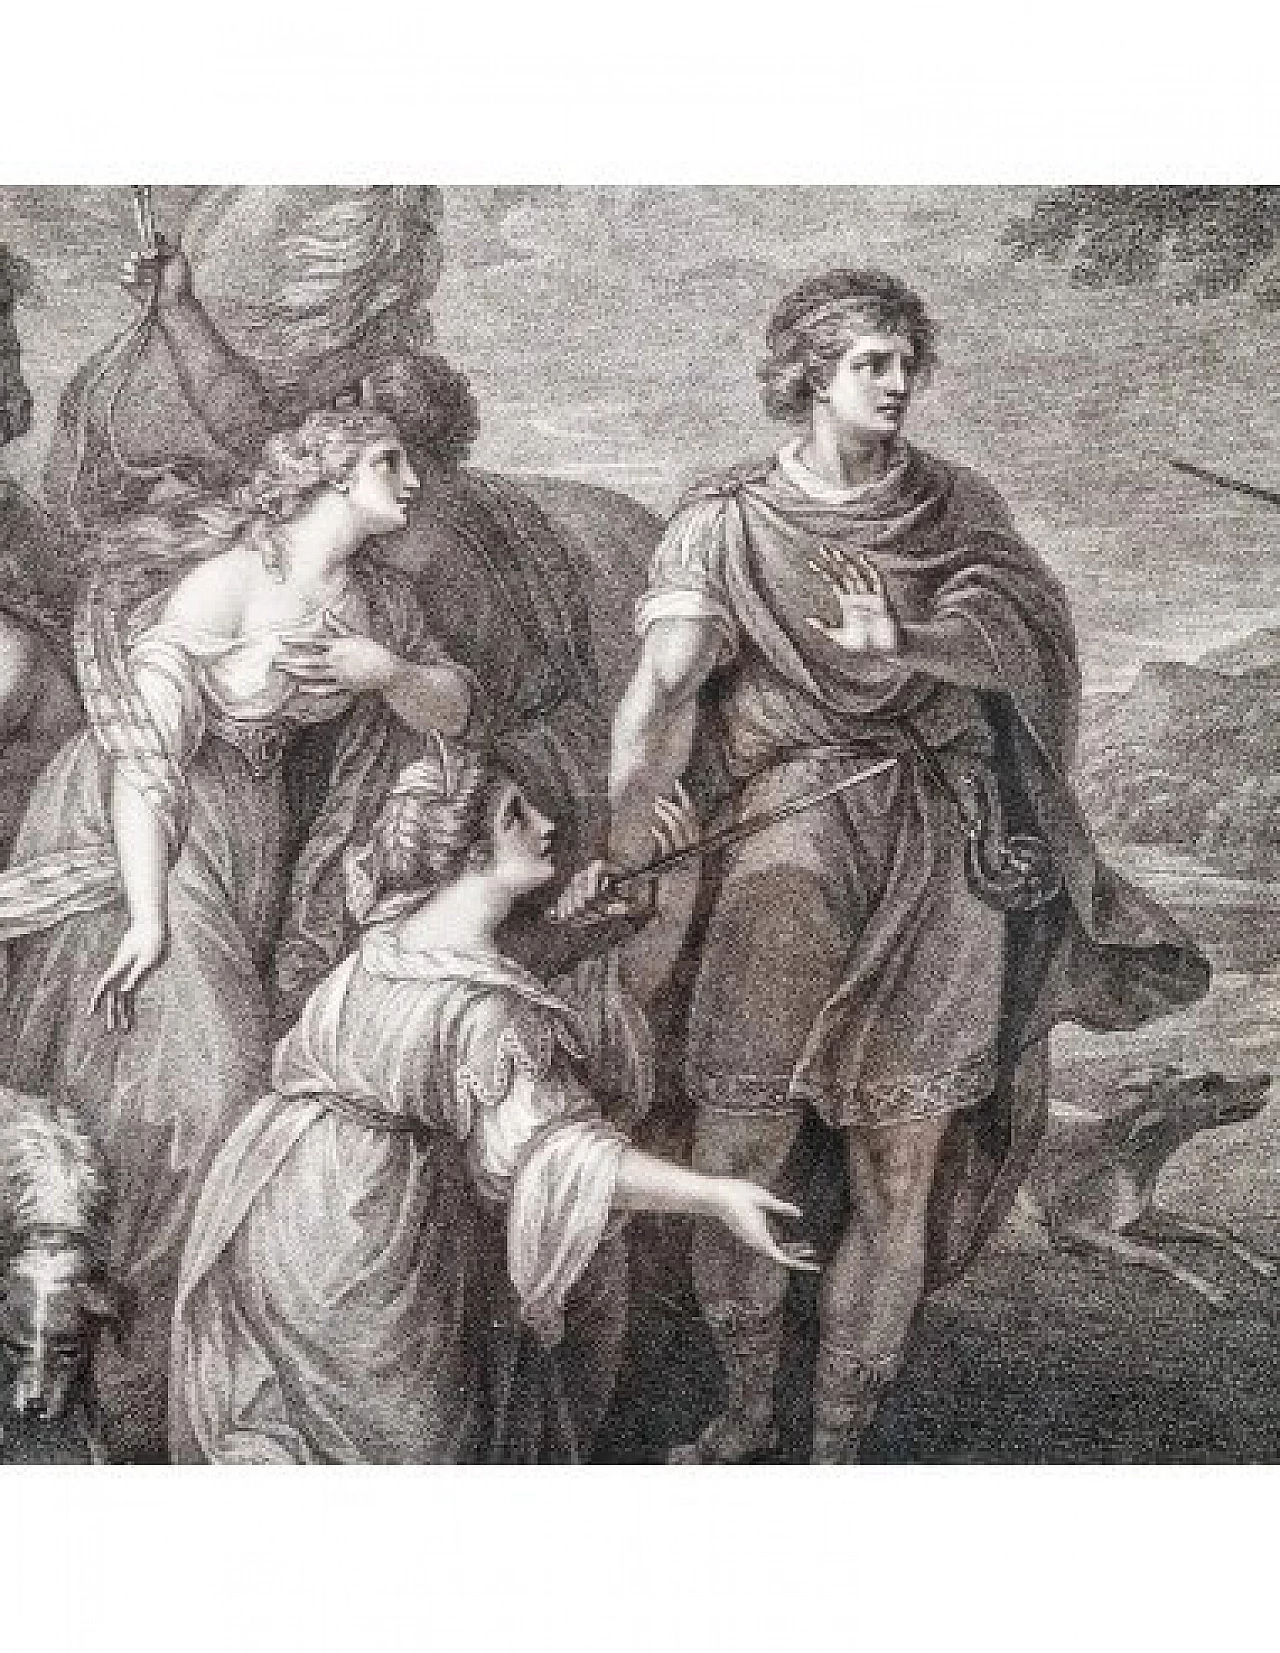 Palamone e Arcite, incisione di Francesco Bartolozzi, '700 10